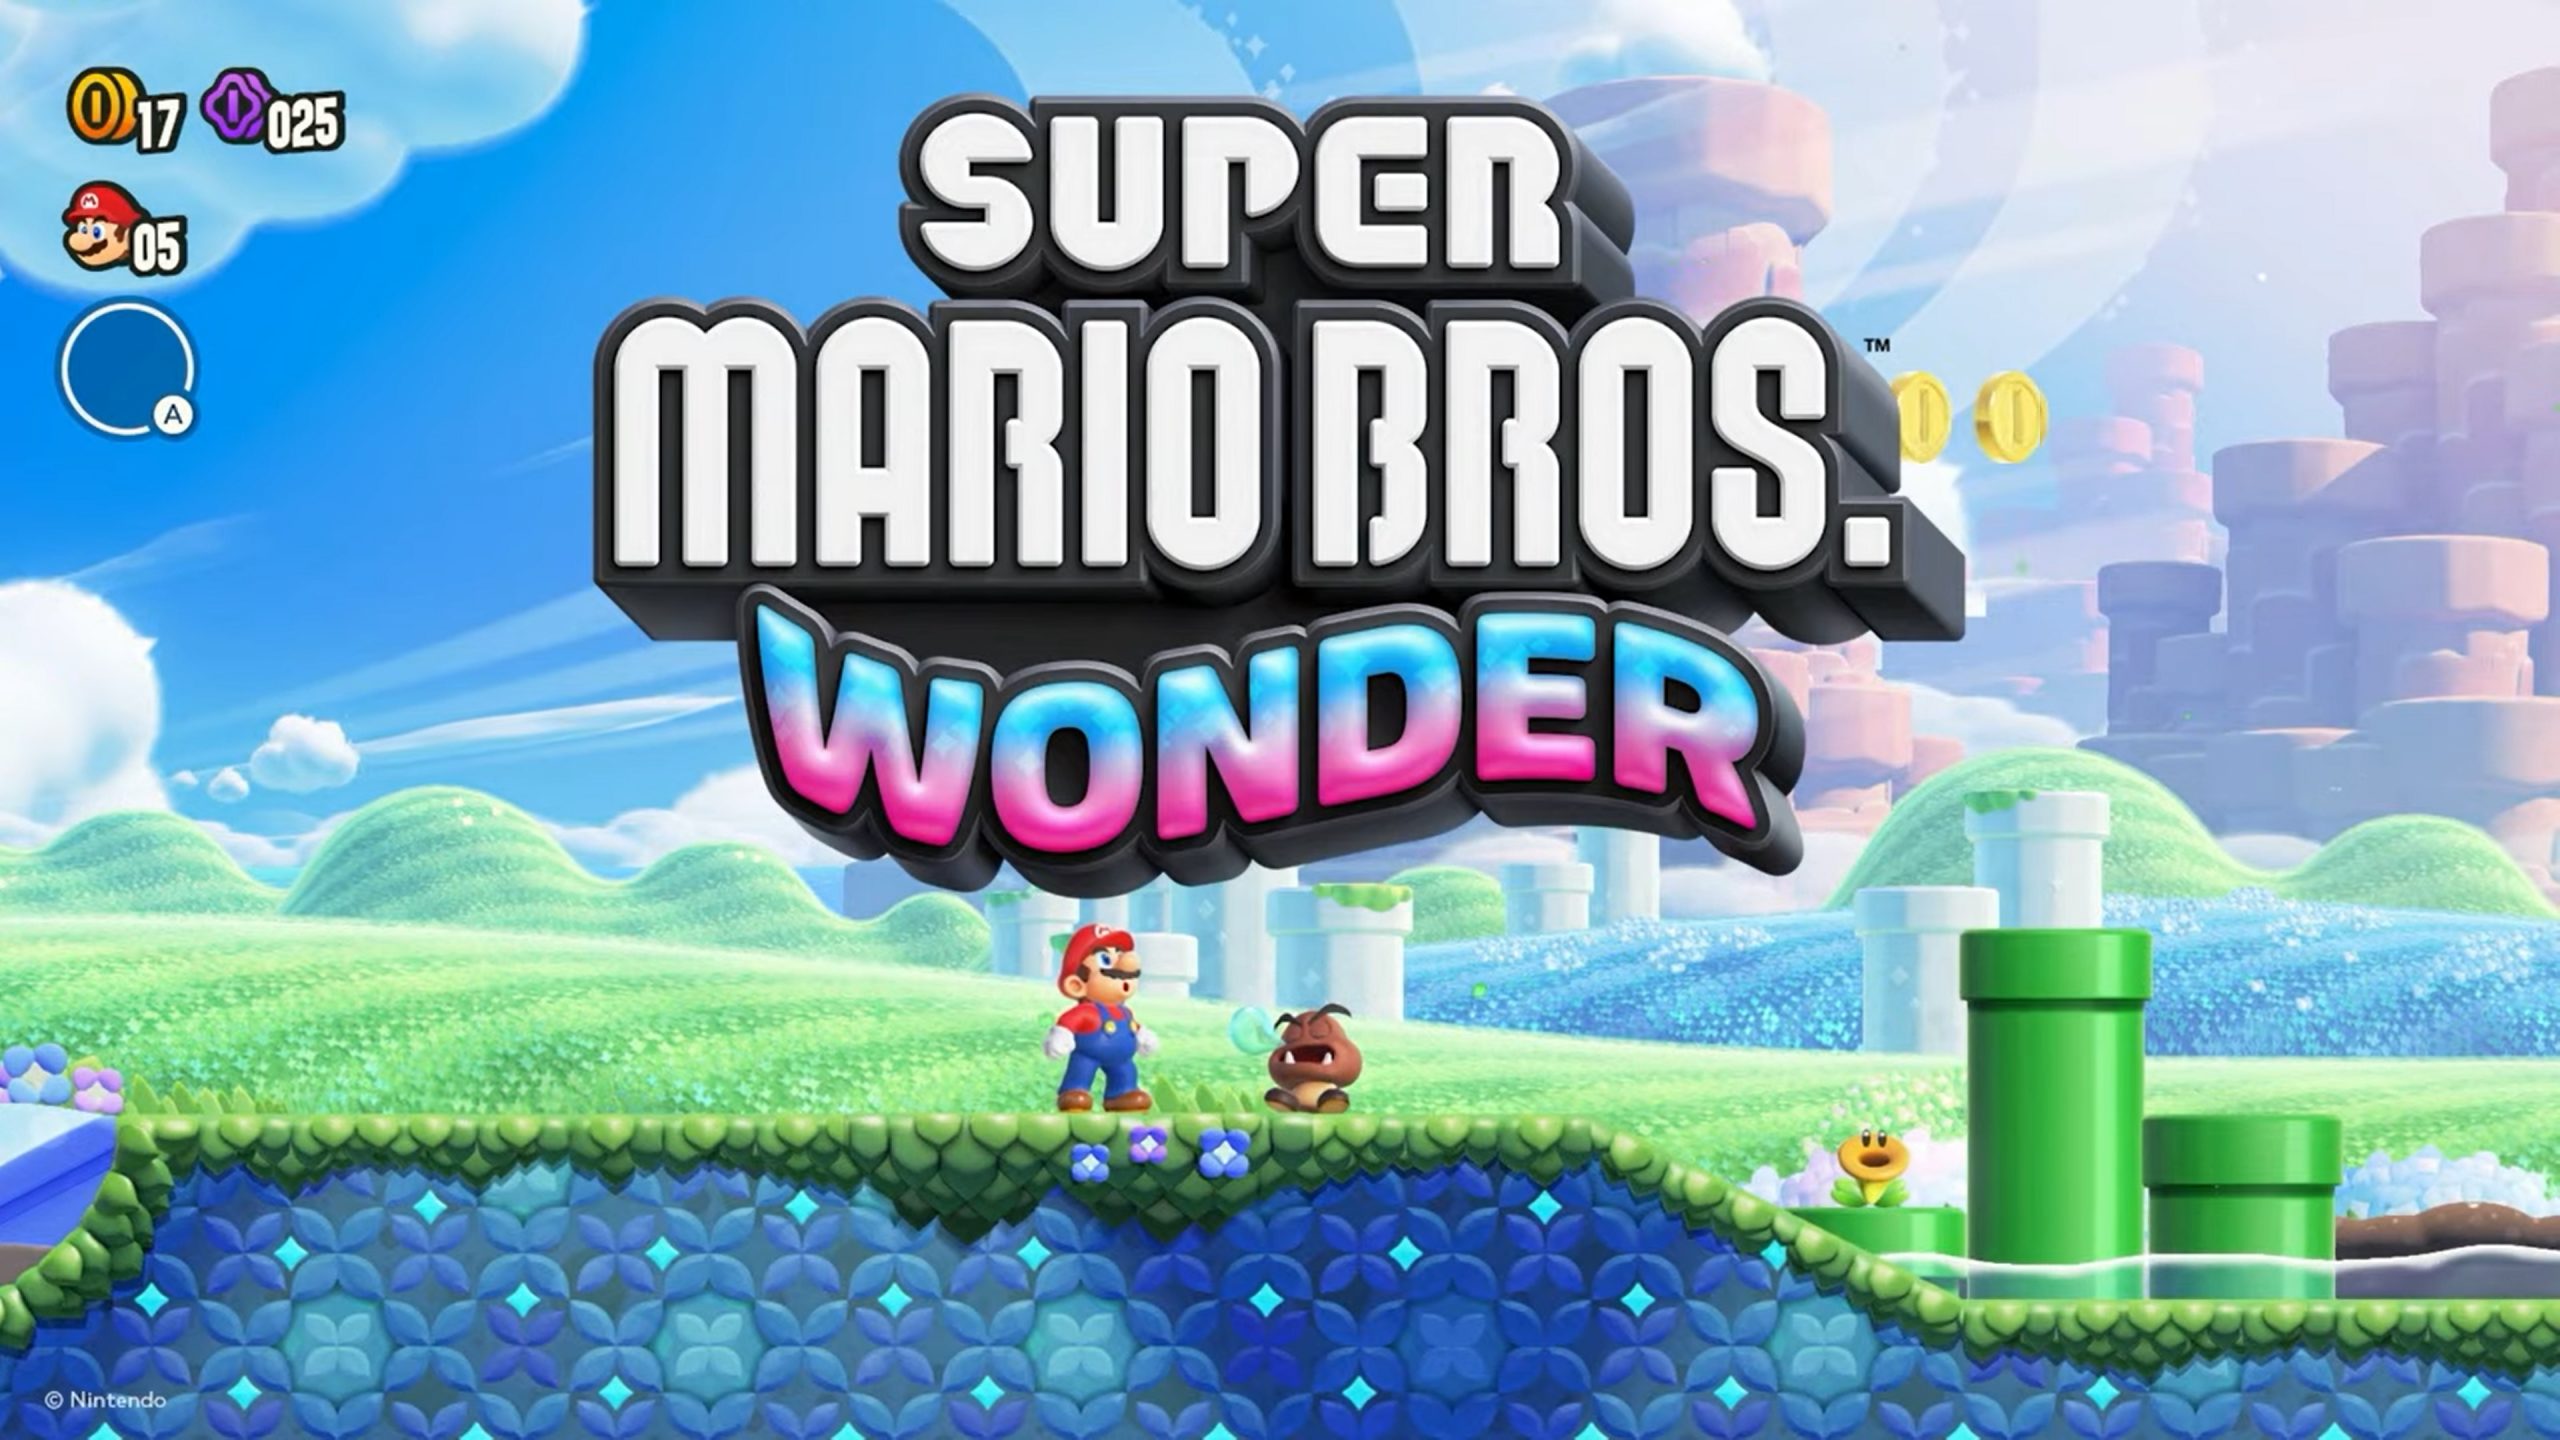 Det ble solgt over 638 000 fysiske eksemplarer av Super Mario Bros. Wonder i Japan. Spillet inntok førsteplassen på hitlistene